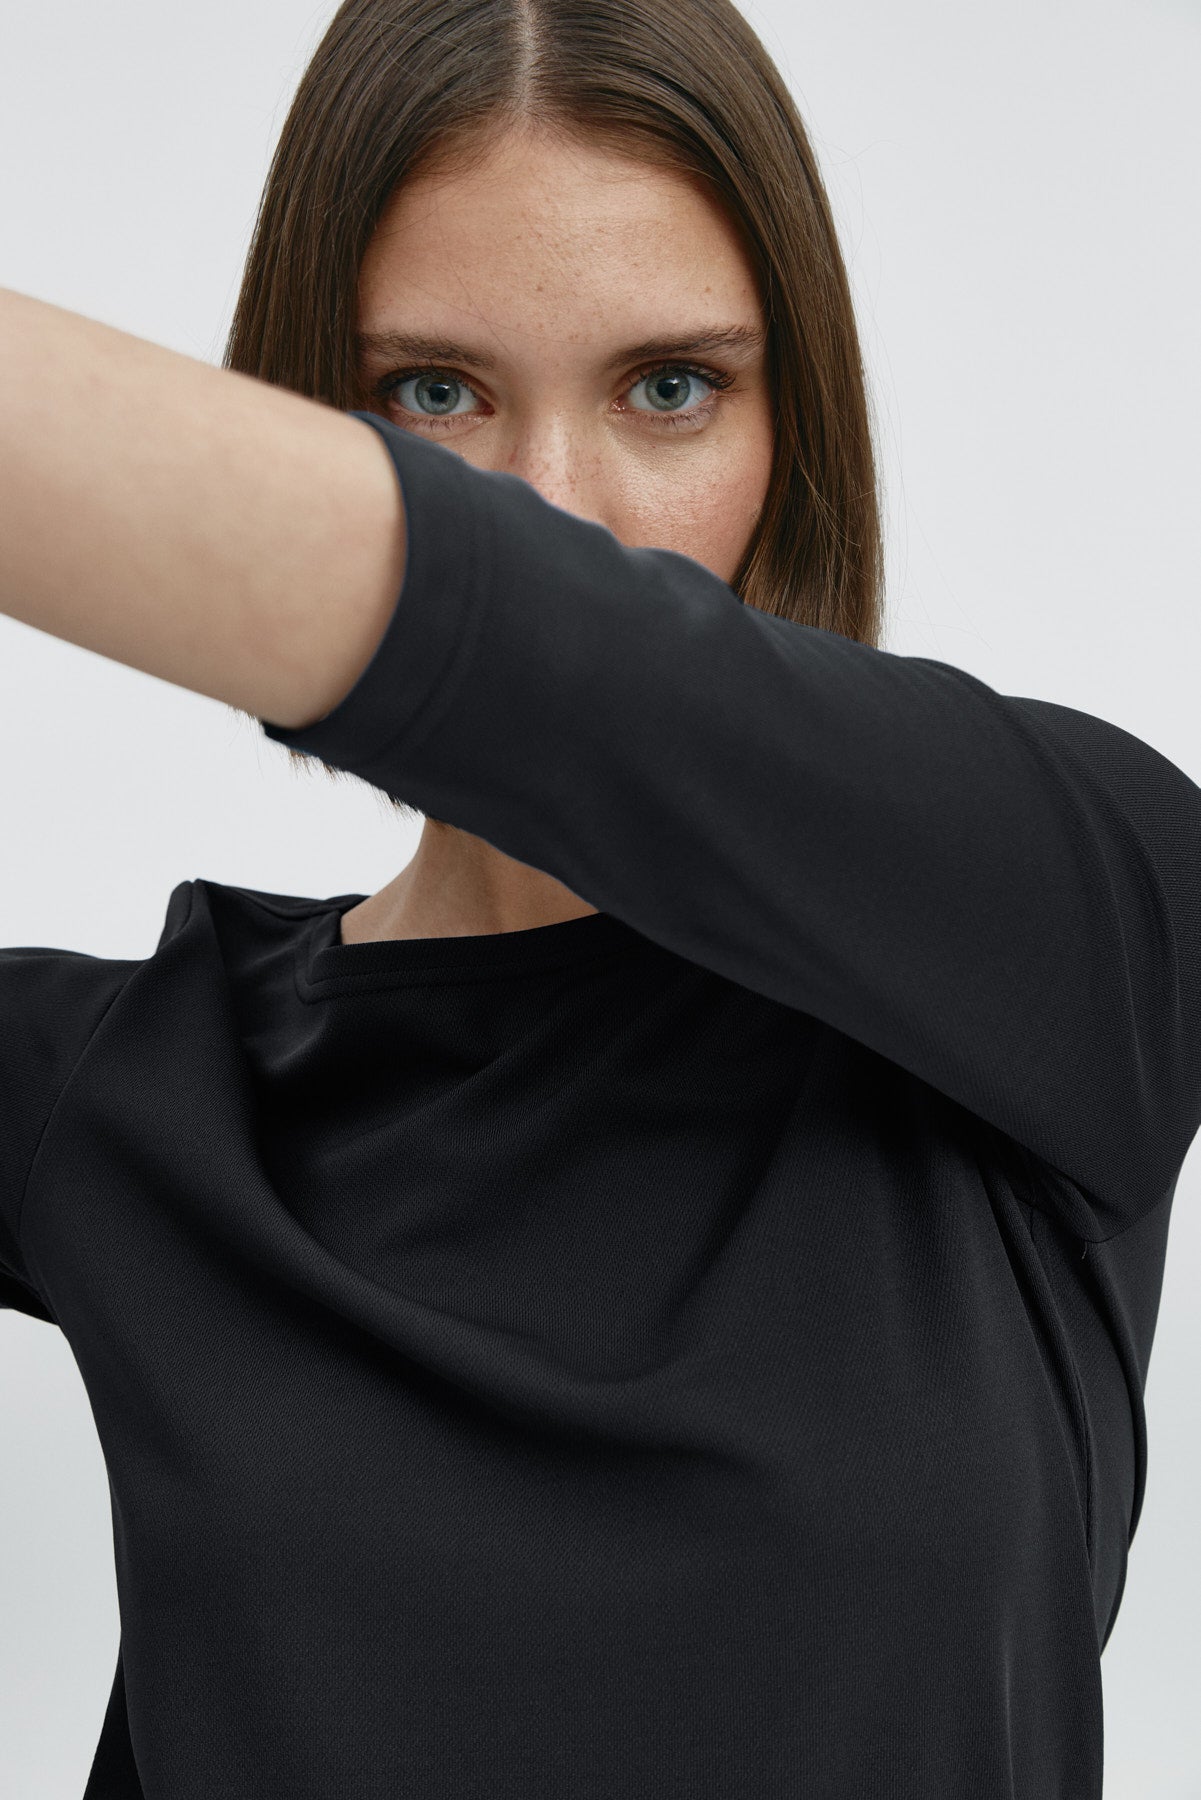 Camiseta para mujer con manga 3/4 y escote barco en color negro. Prenda básica perfecta para cualquier ocasión. Foto flexibilidad